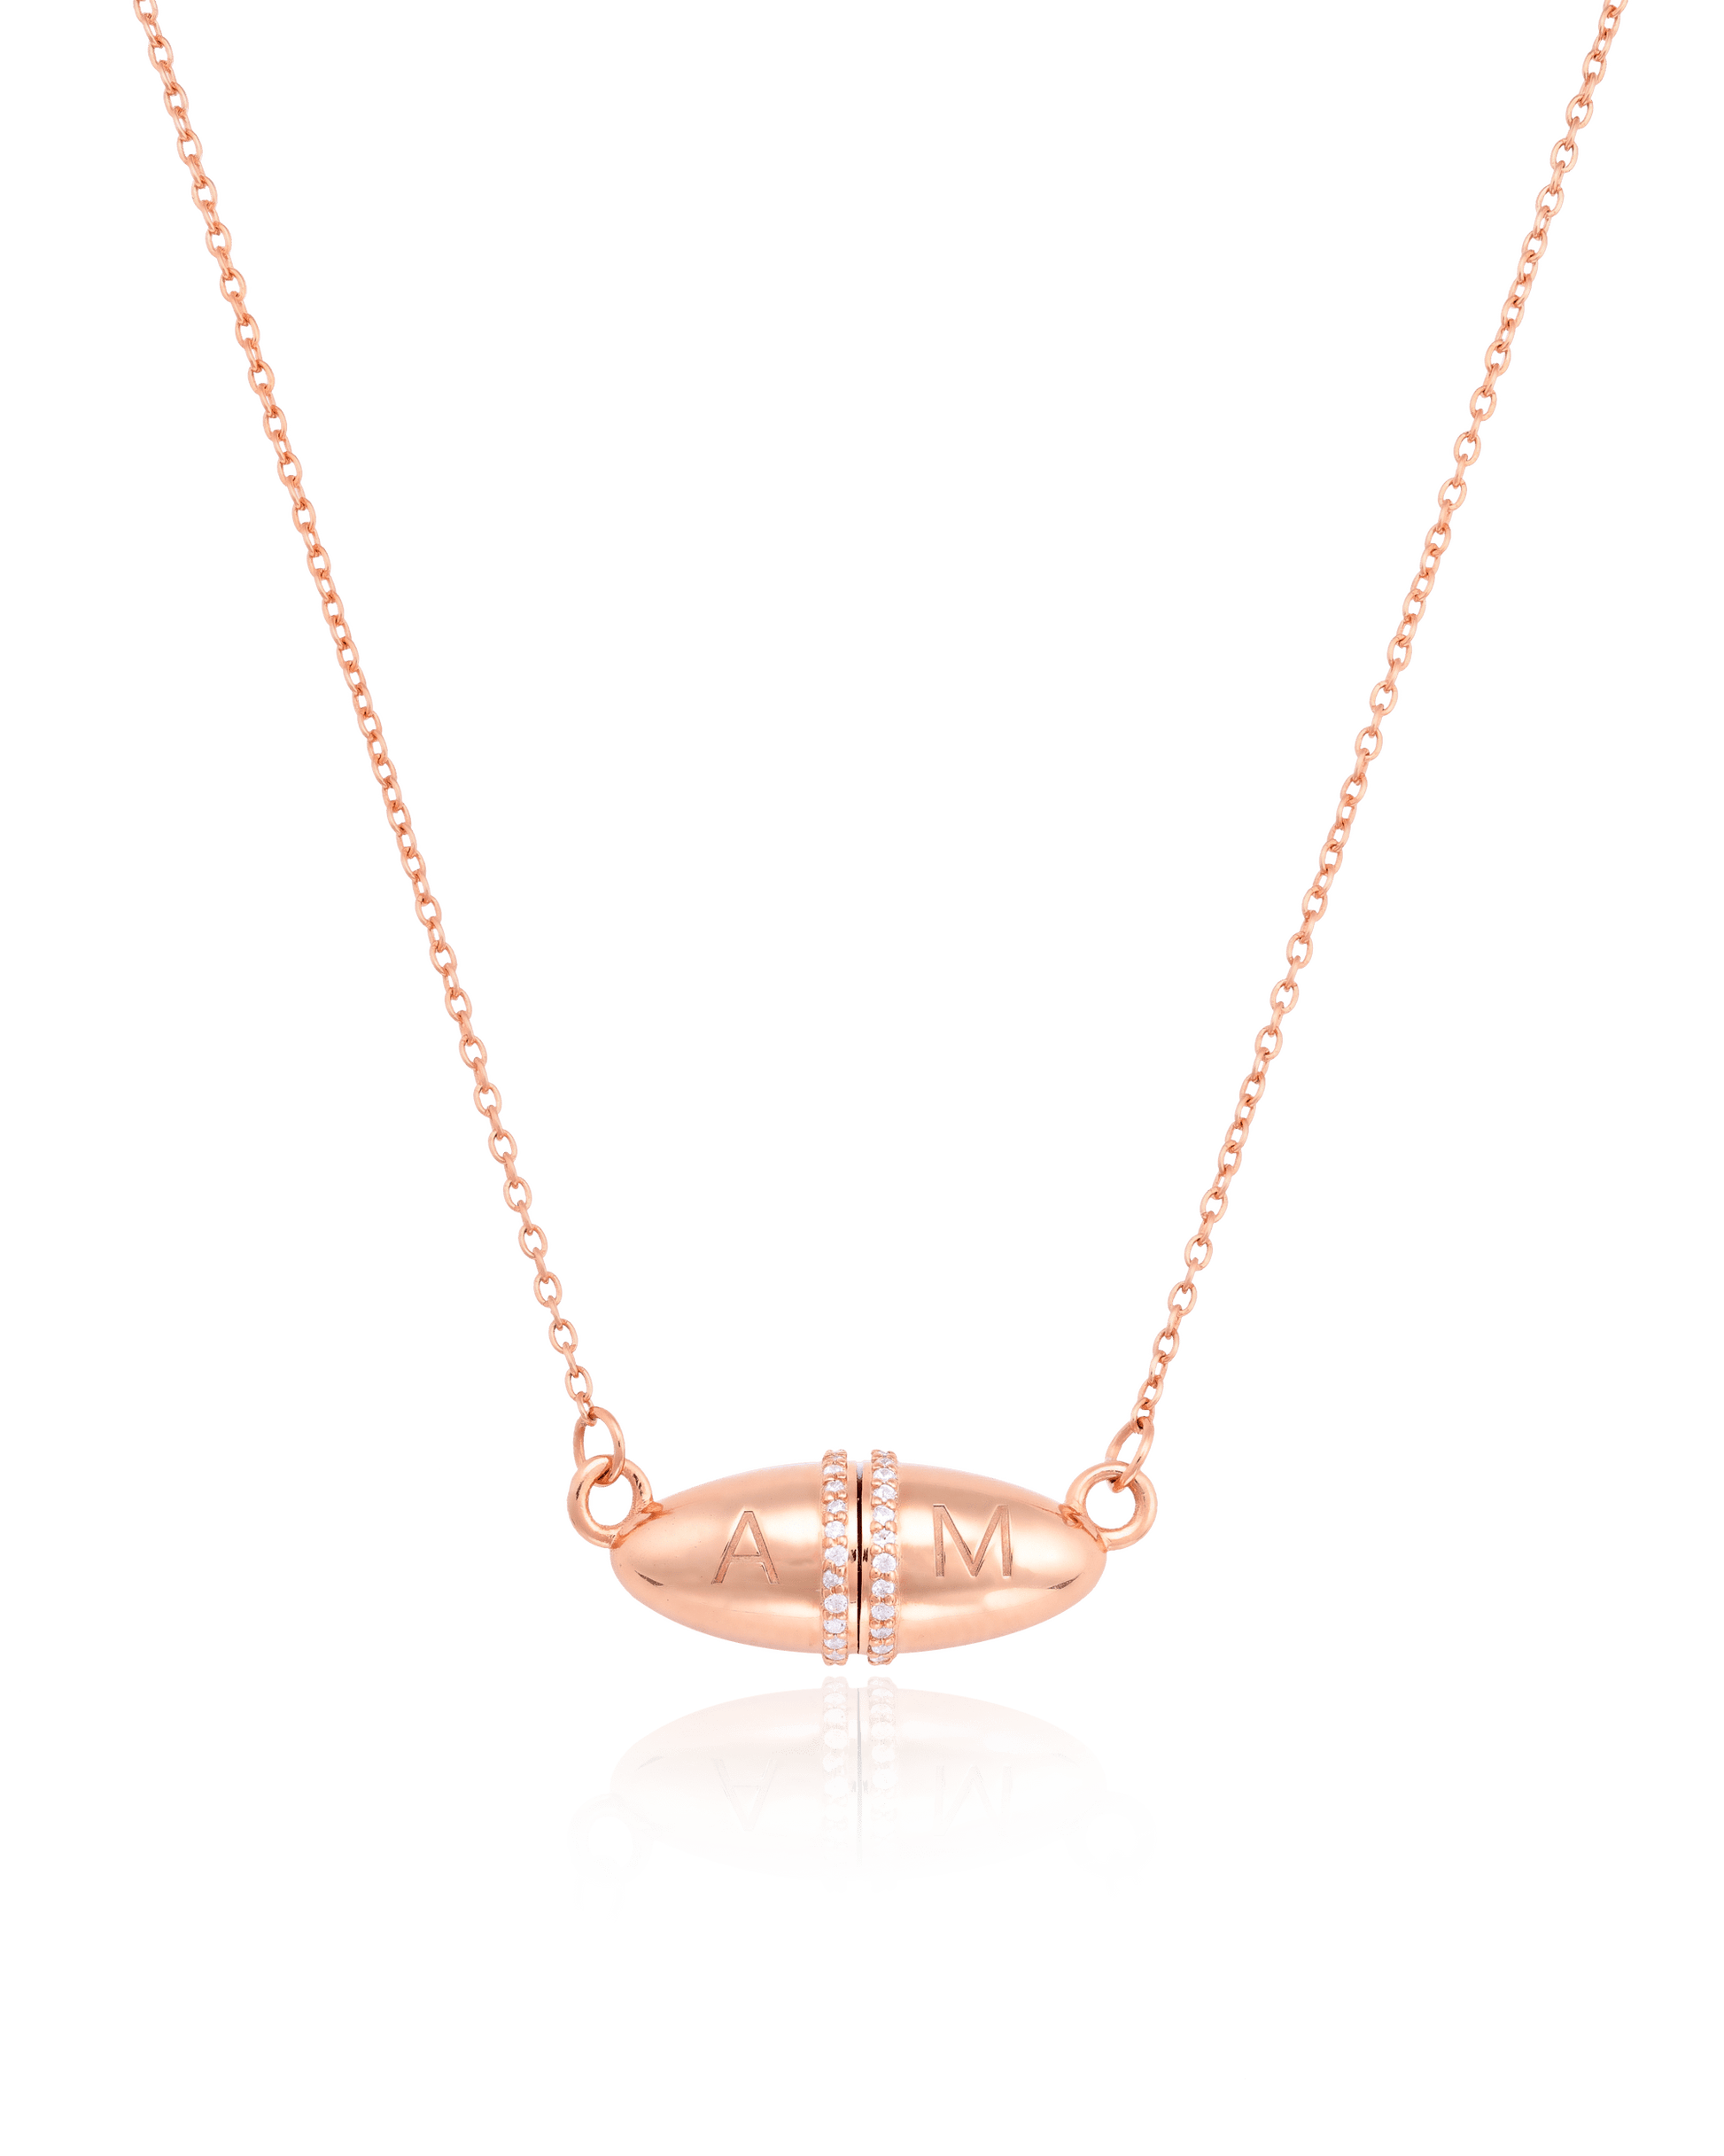 Fabergé Chain Necklace - 18K Gold Vermeil Necklaces magal-dev 